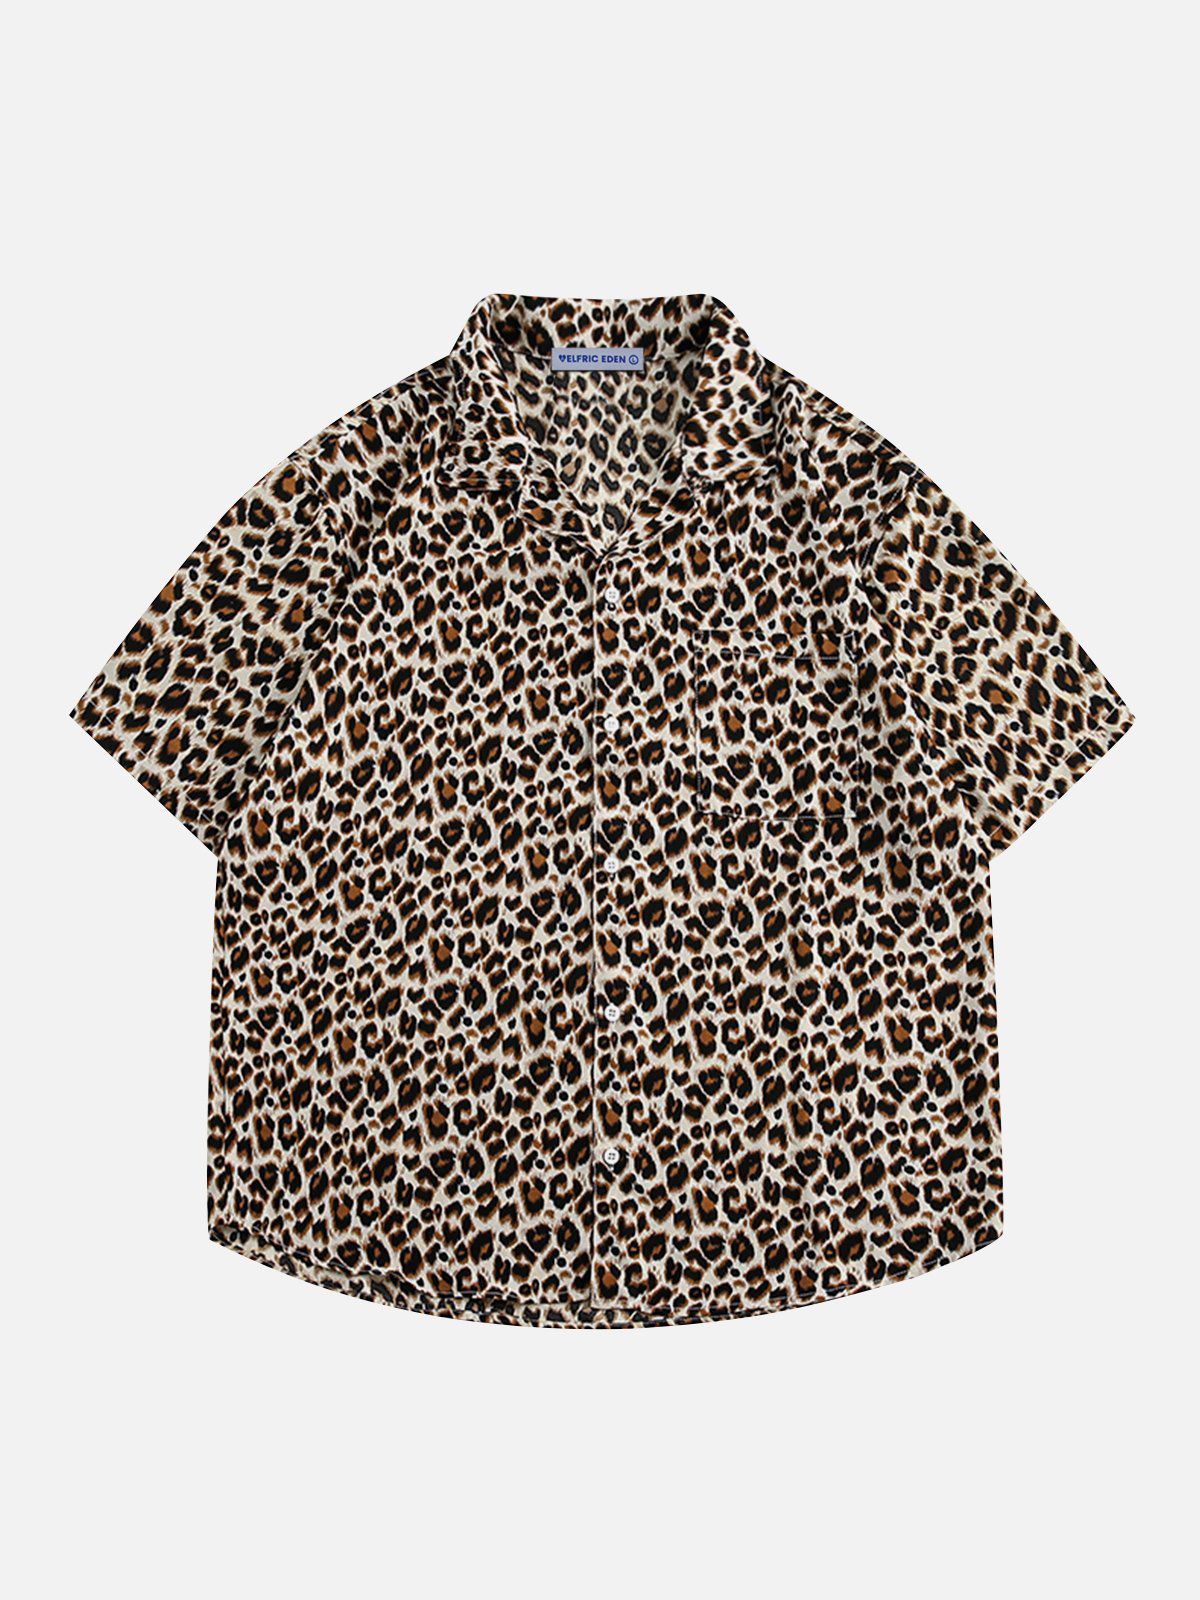 Aelfric Eden Apricot Leopard Print Short Sleeve Shirt